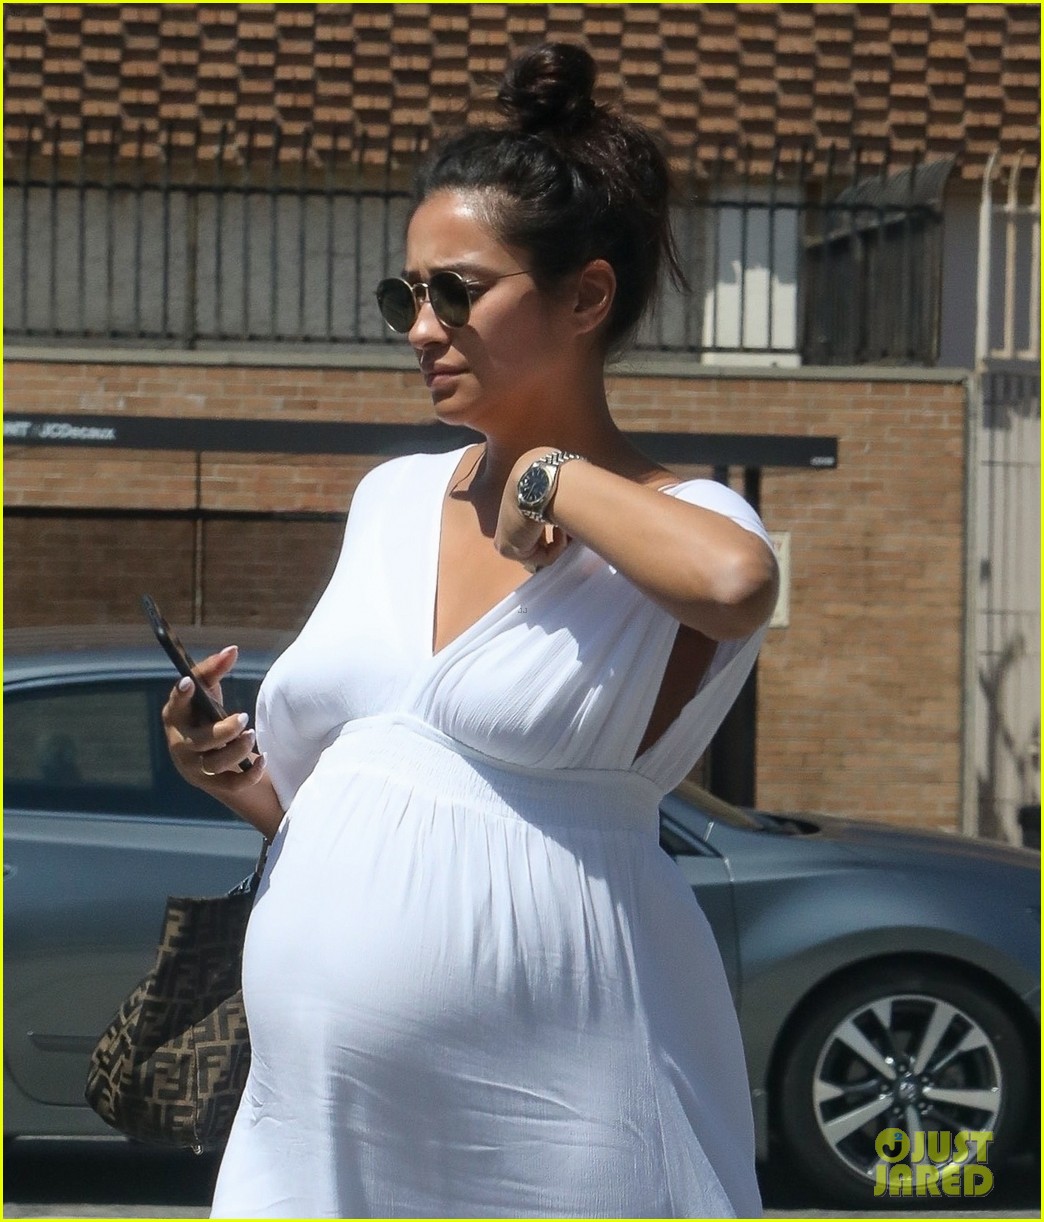 Pregnant is zendaya Zendaya Pregnant: